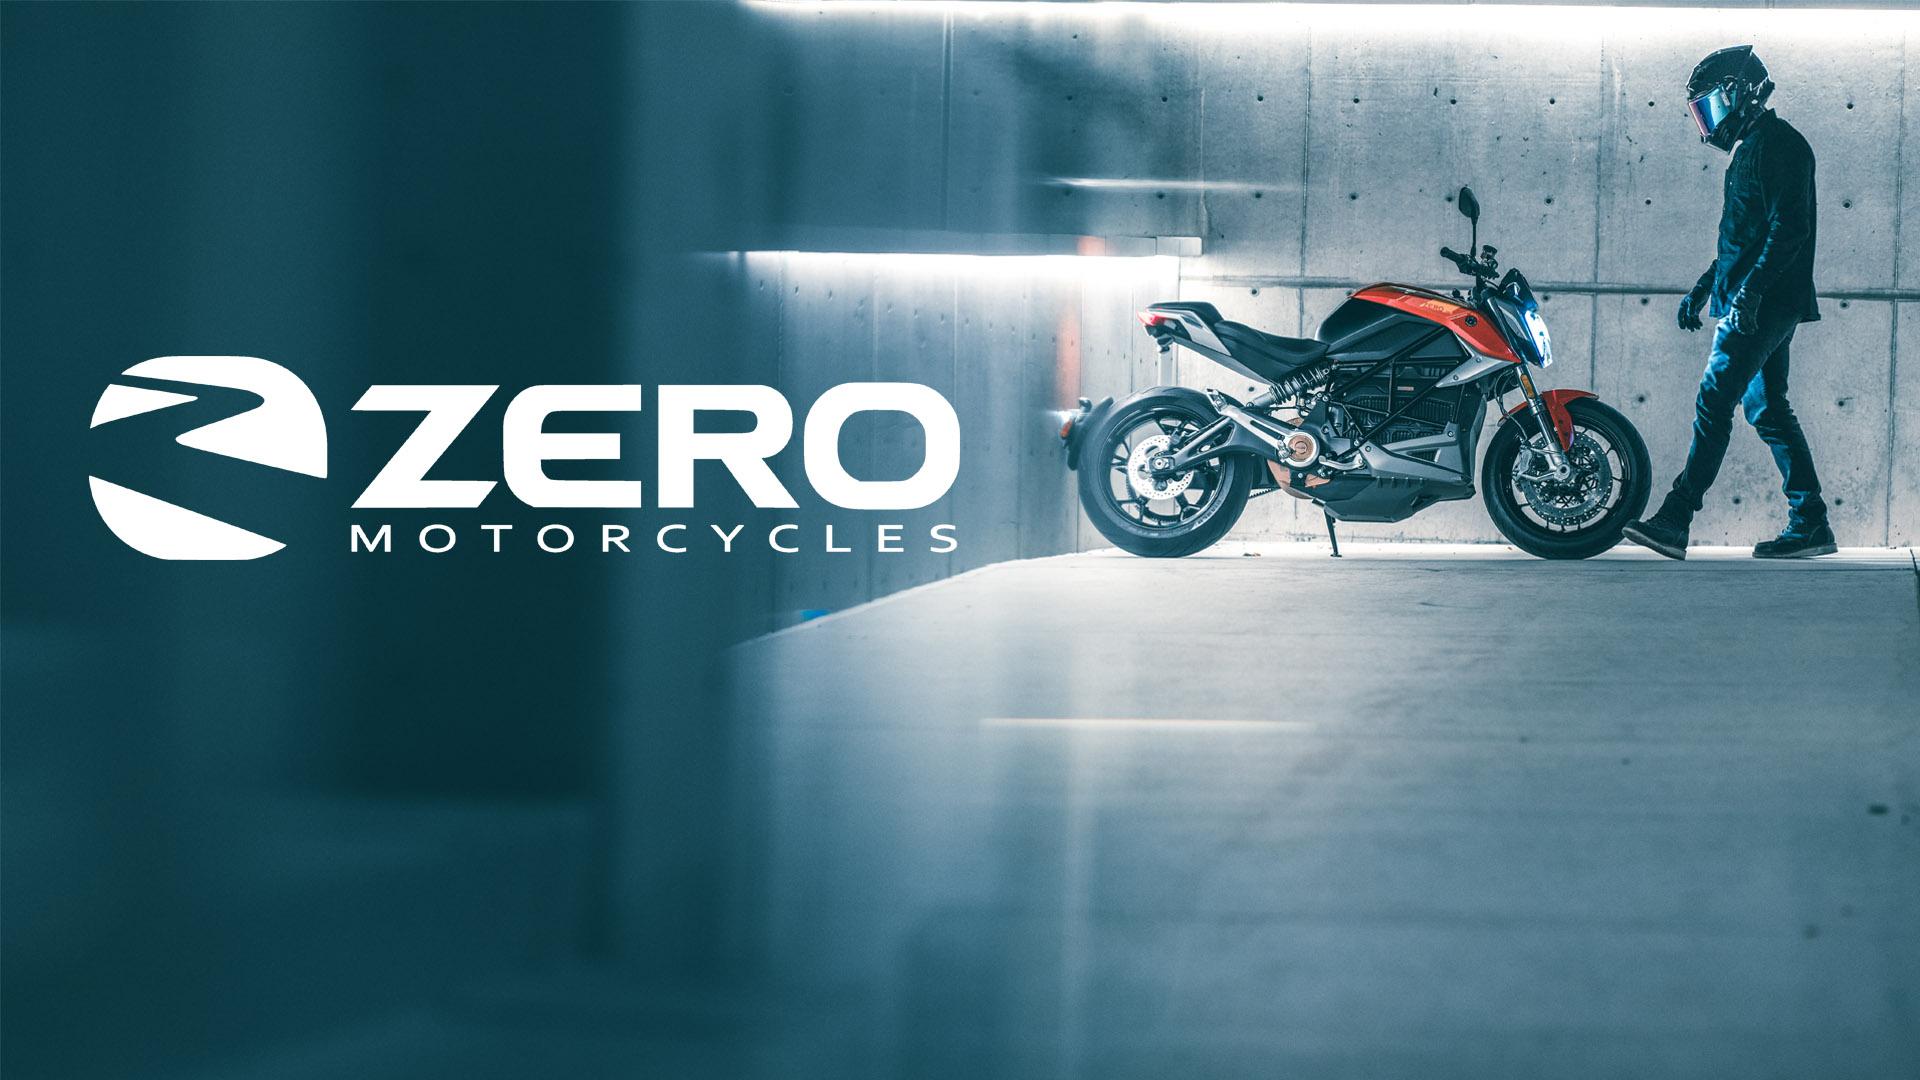 ZERO MOTORCYCLES LIMOGES